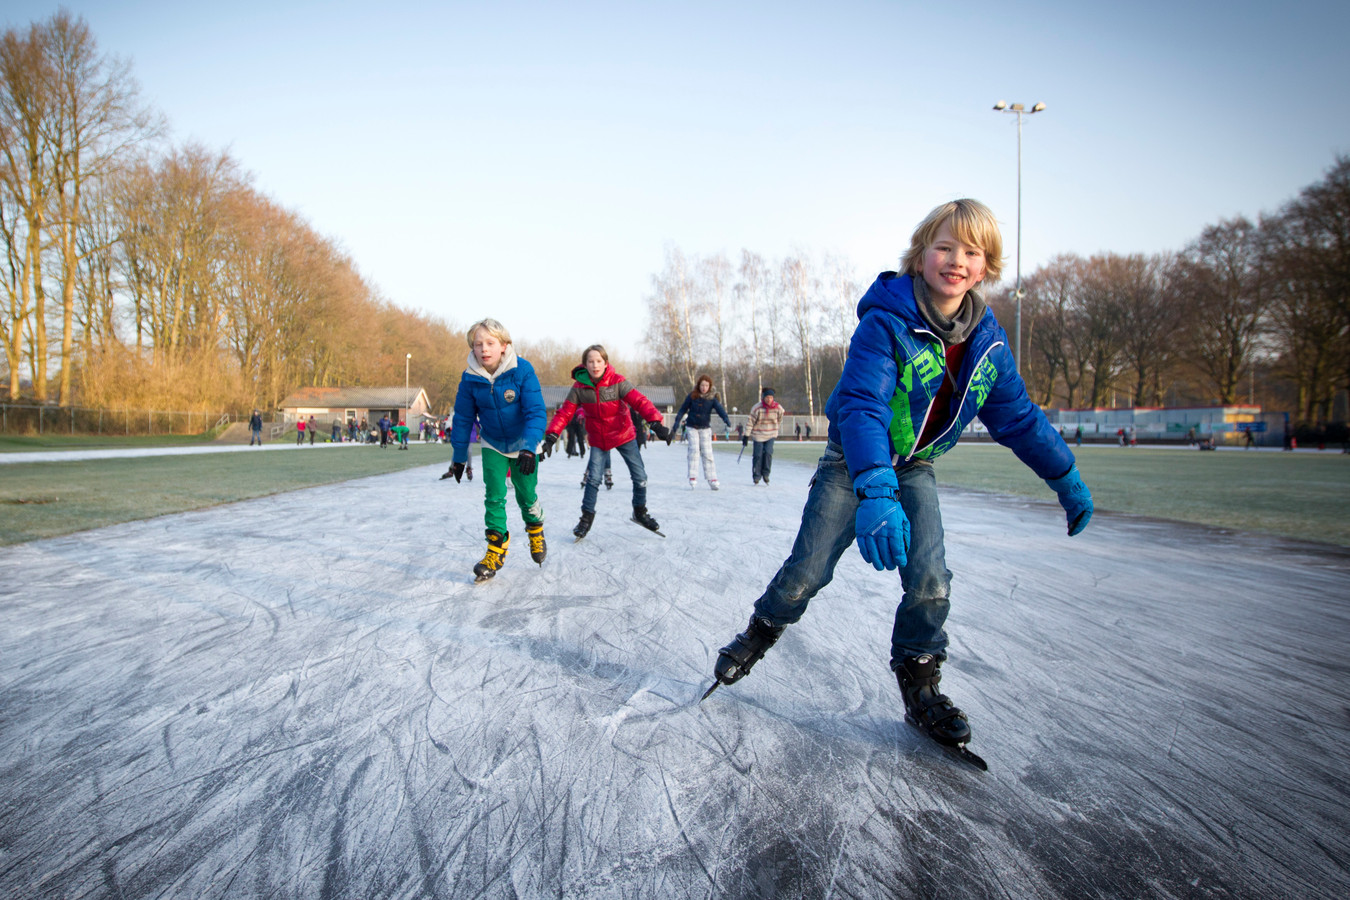 Vriend petticoat Leed Voorzichtig denkt Doorn aan schaatsen, maar dan alleen voor kinderen van  leden | Foto | AD.nl